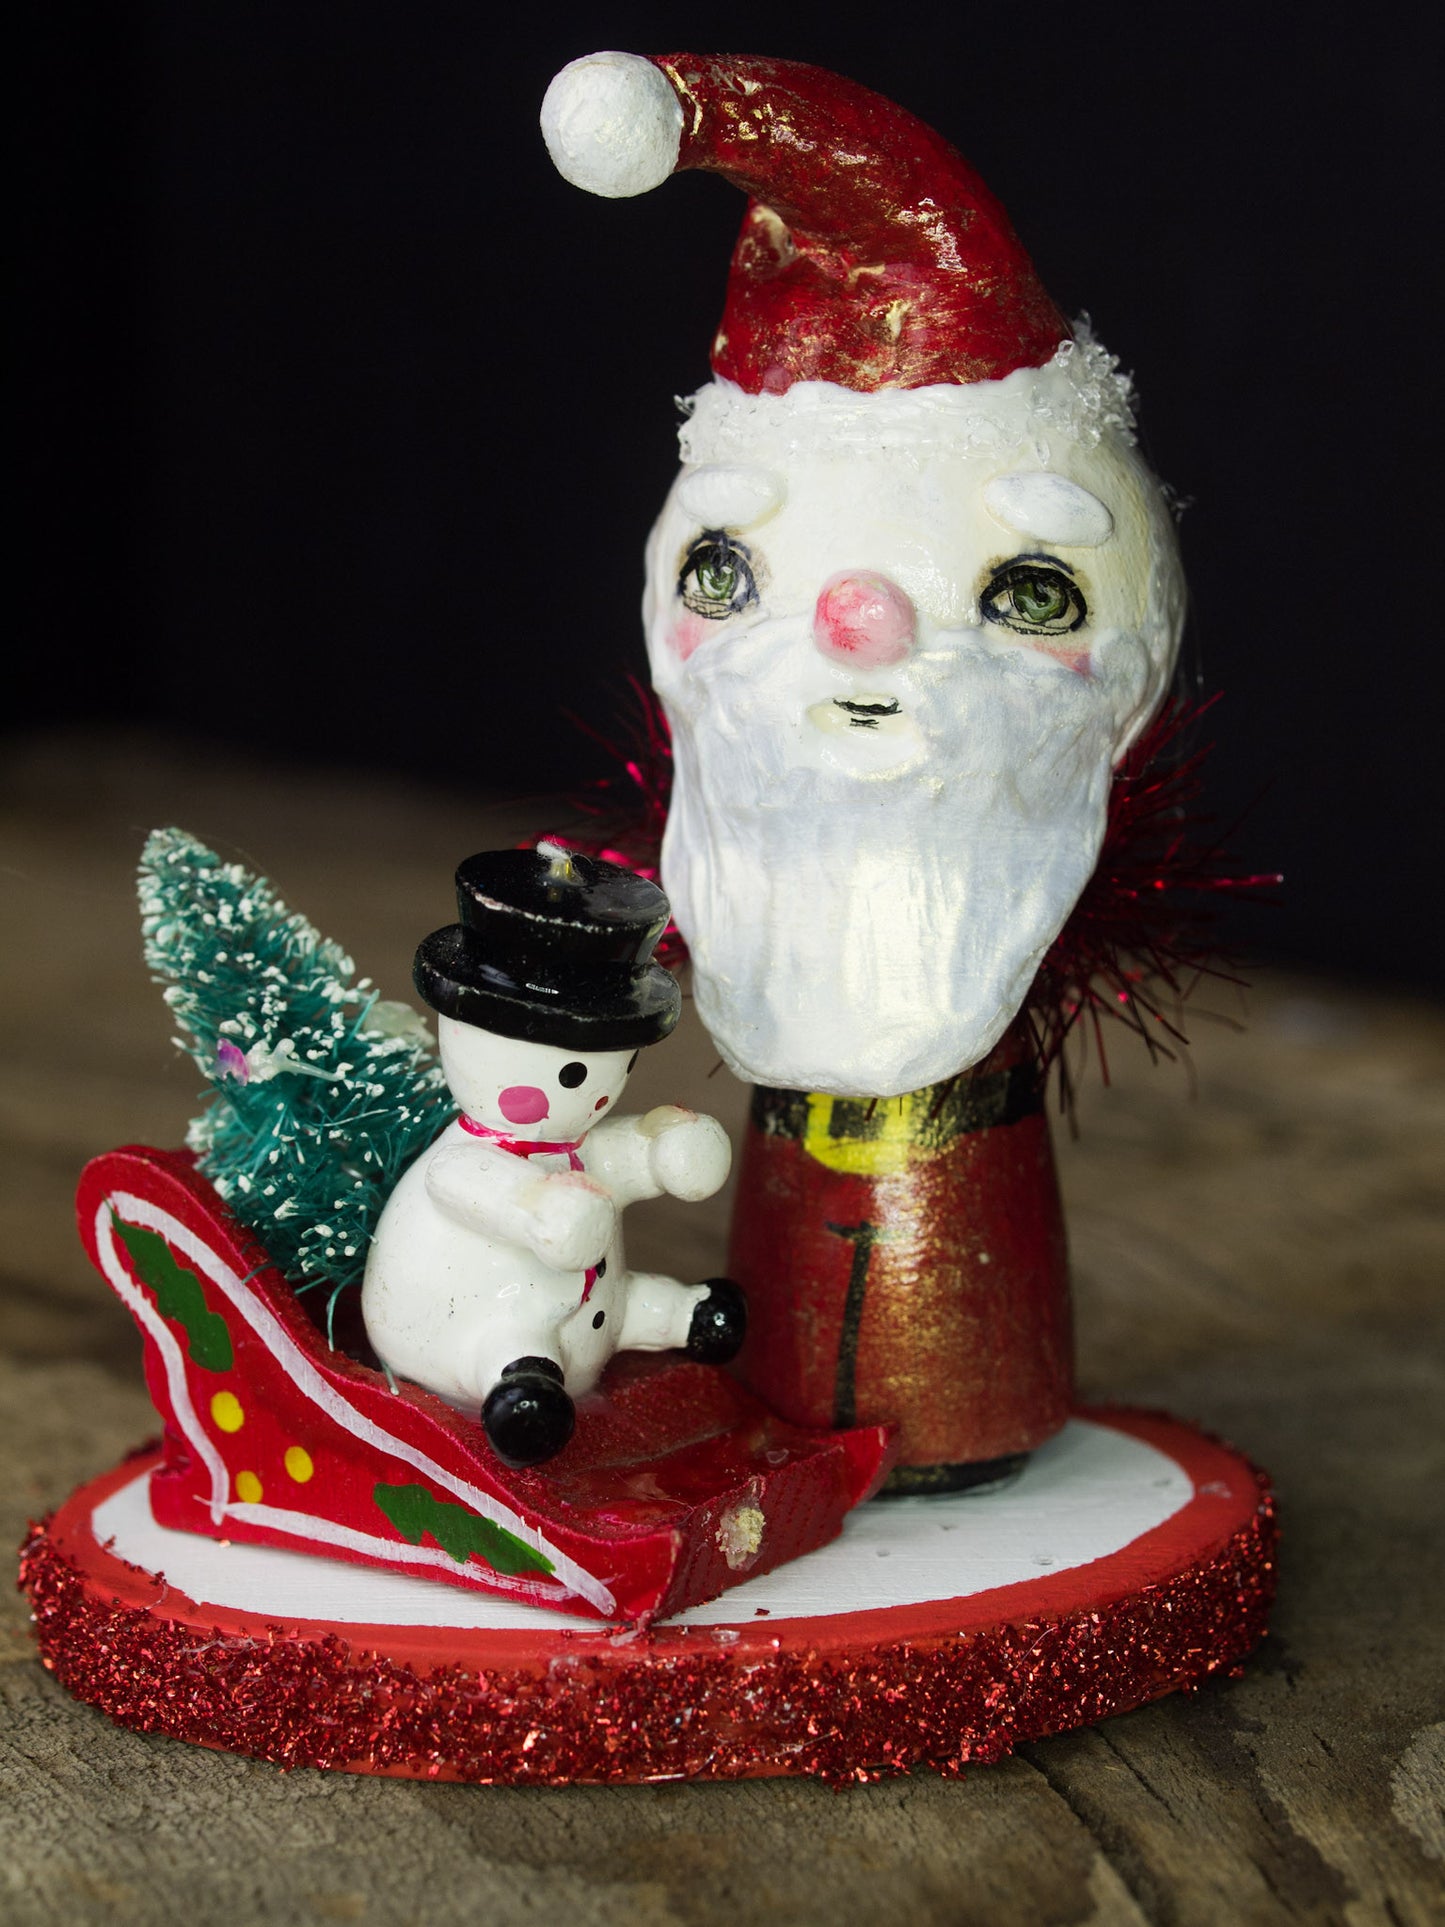 Santa in his magic sled, a holiday wood kokeshi art doll created by Danita Art